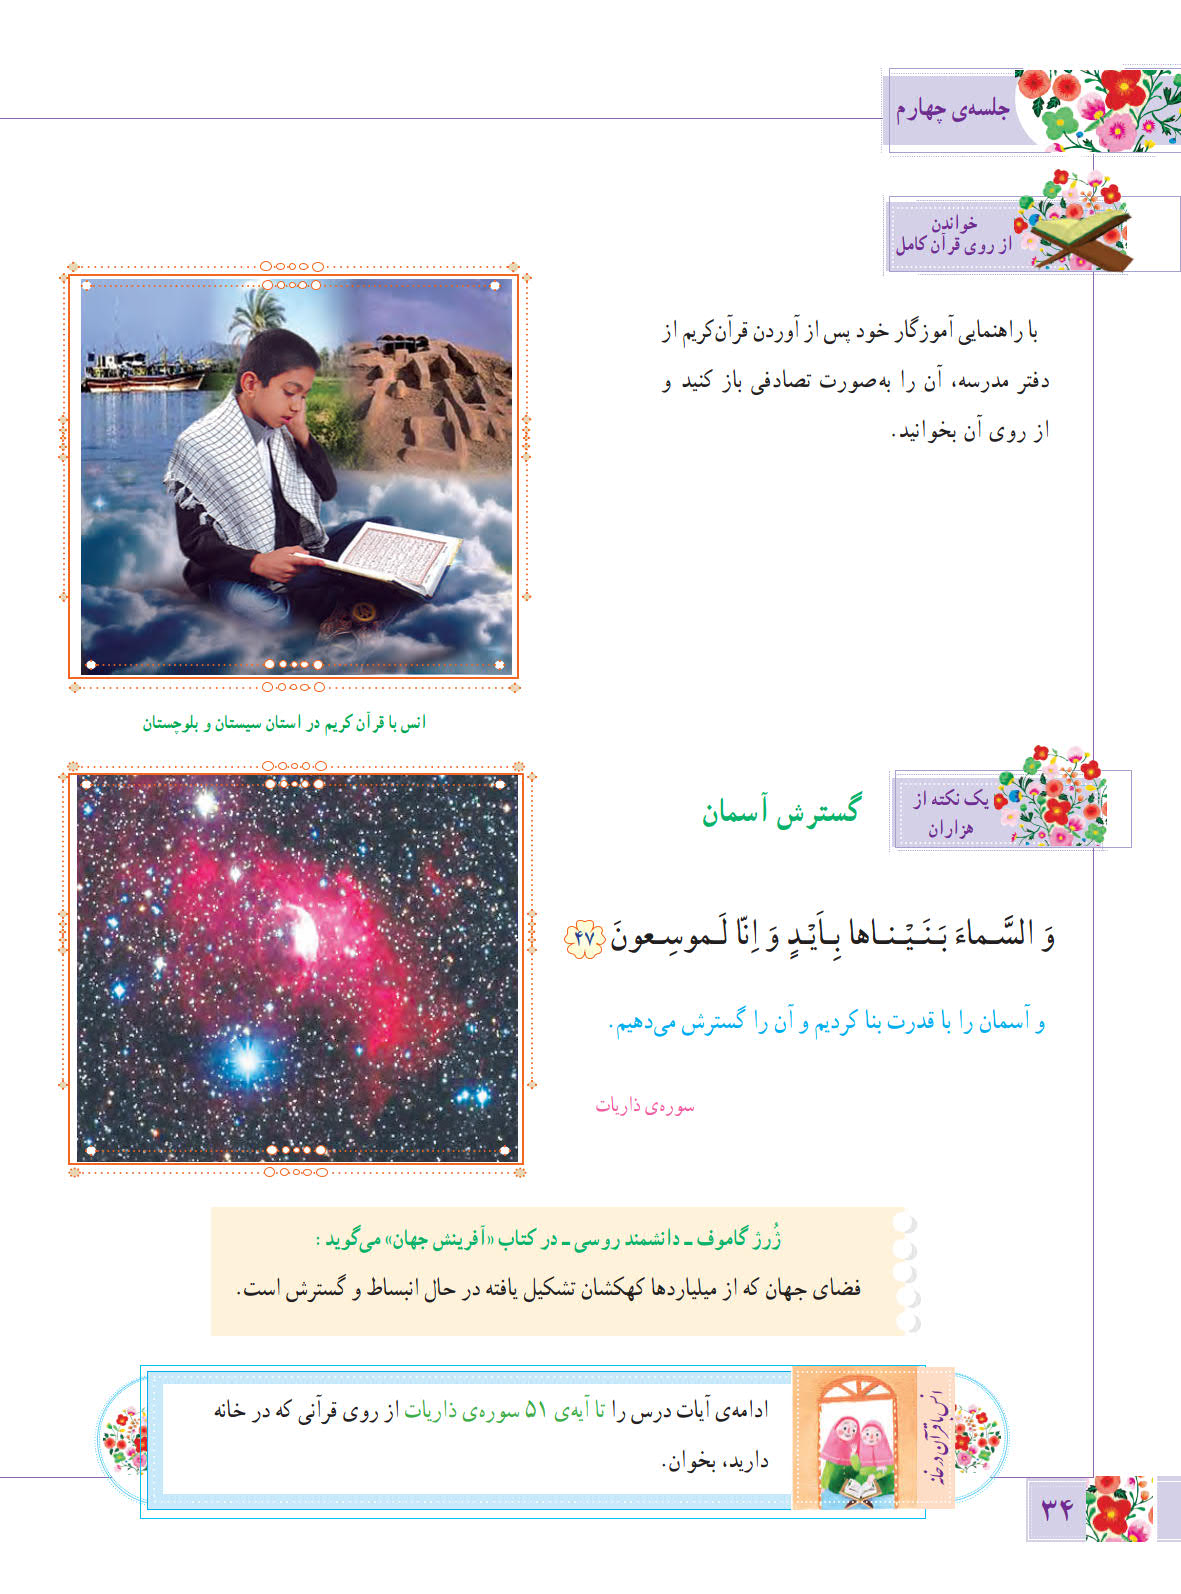 روخوانی و متن صفحه 34 درس پنجم آموزش قرآن ششم ابتدایی - کلاس اینترنتی ما - مومکا - momeka.ir (1)